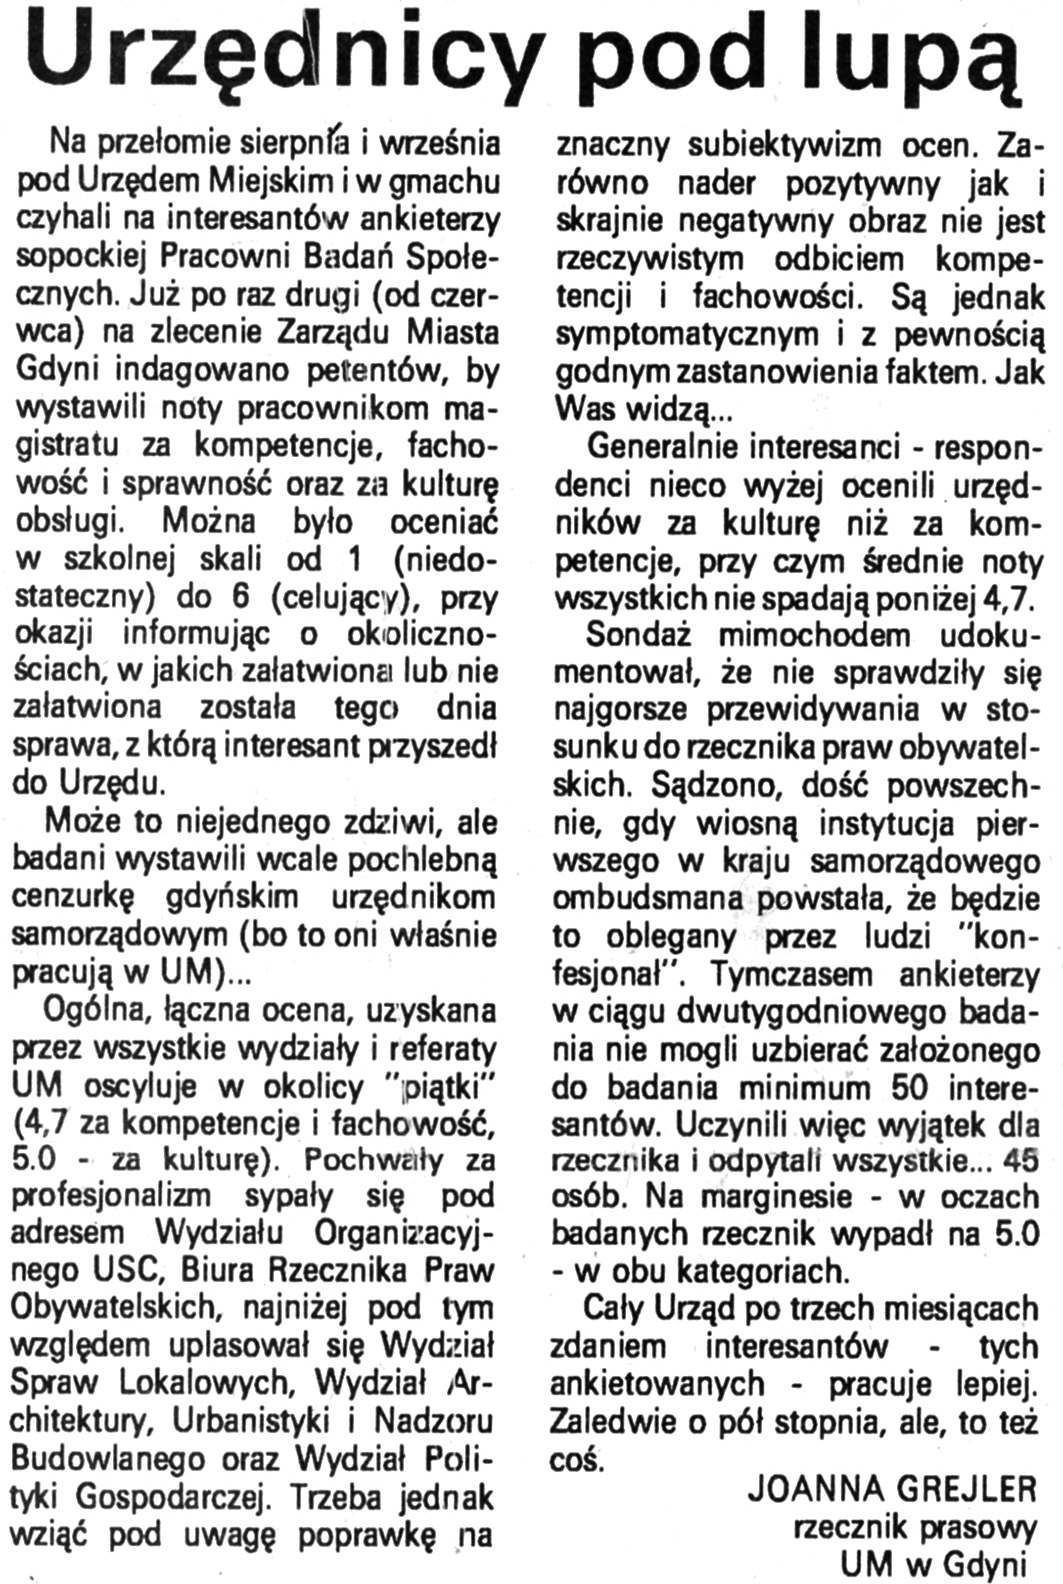 Urzędnicy pod lupą / Joanna Grejler // Kurier Gdyński. - 1992, nr 1, s. 4